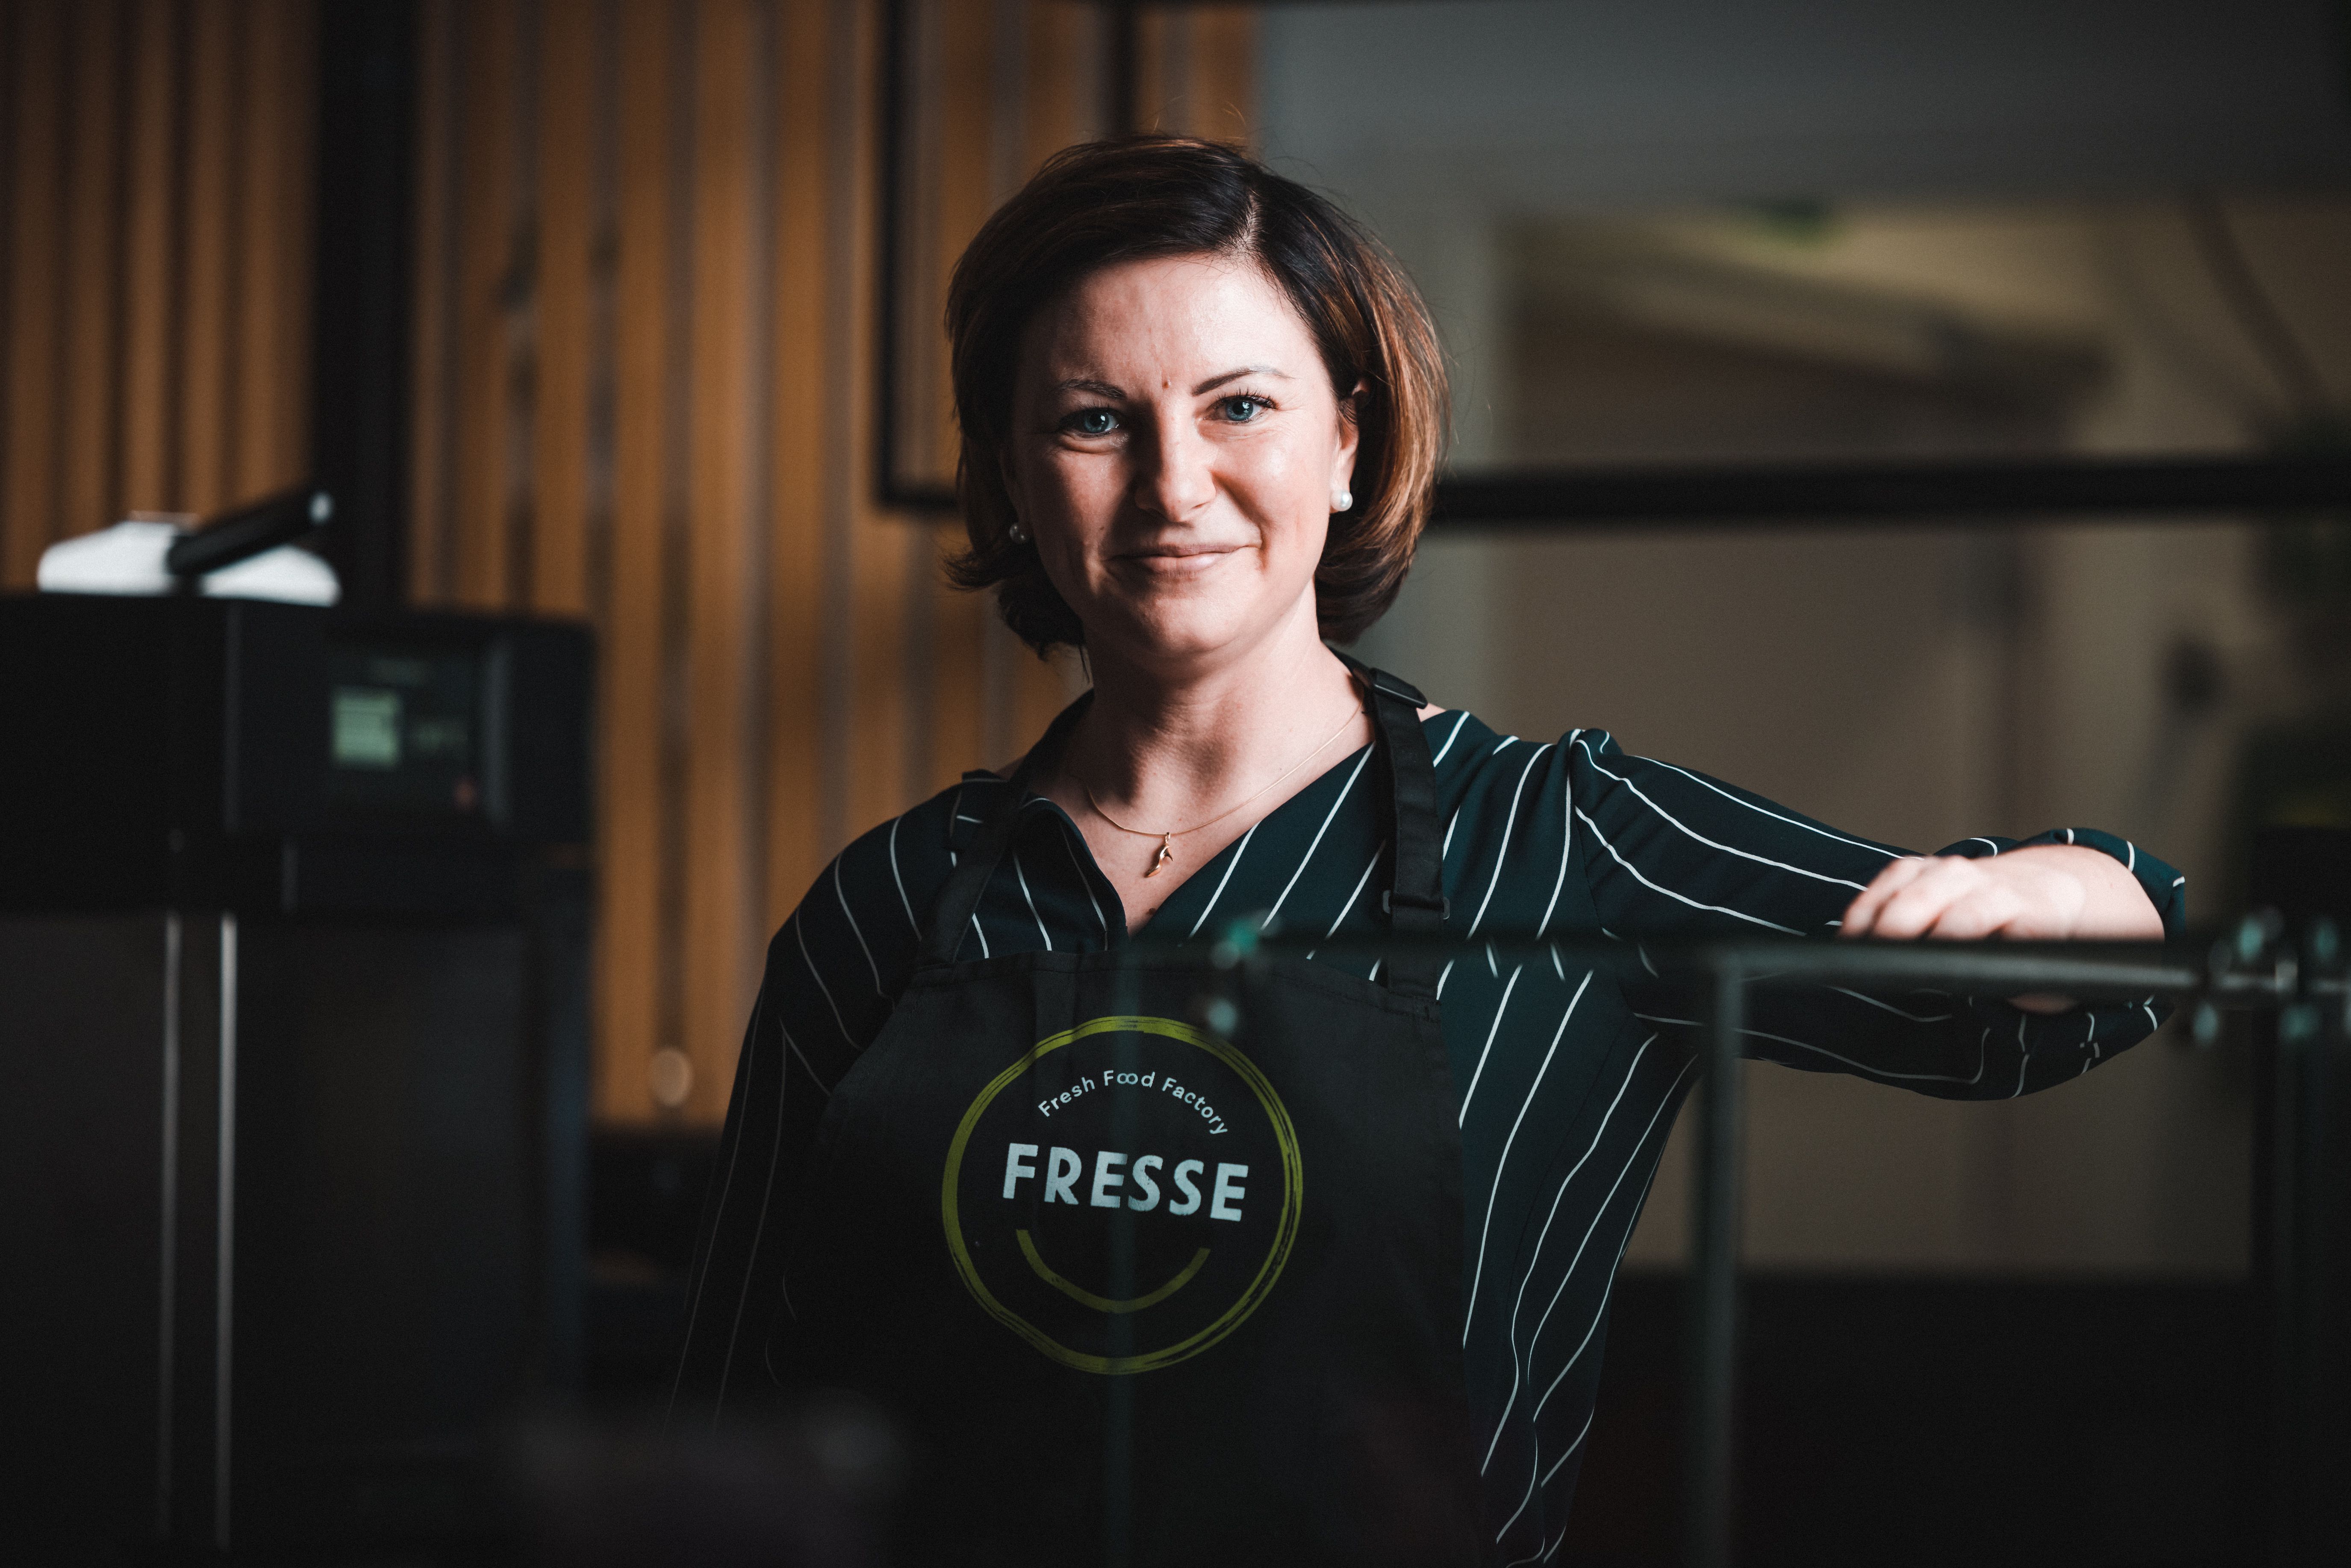 Fresh Servant avaa 3.2. ensimmäisen Fresse-ravintolan Hämeenlinnaan